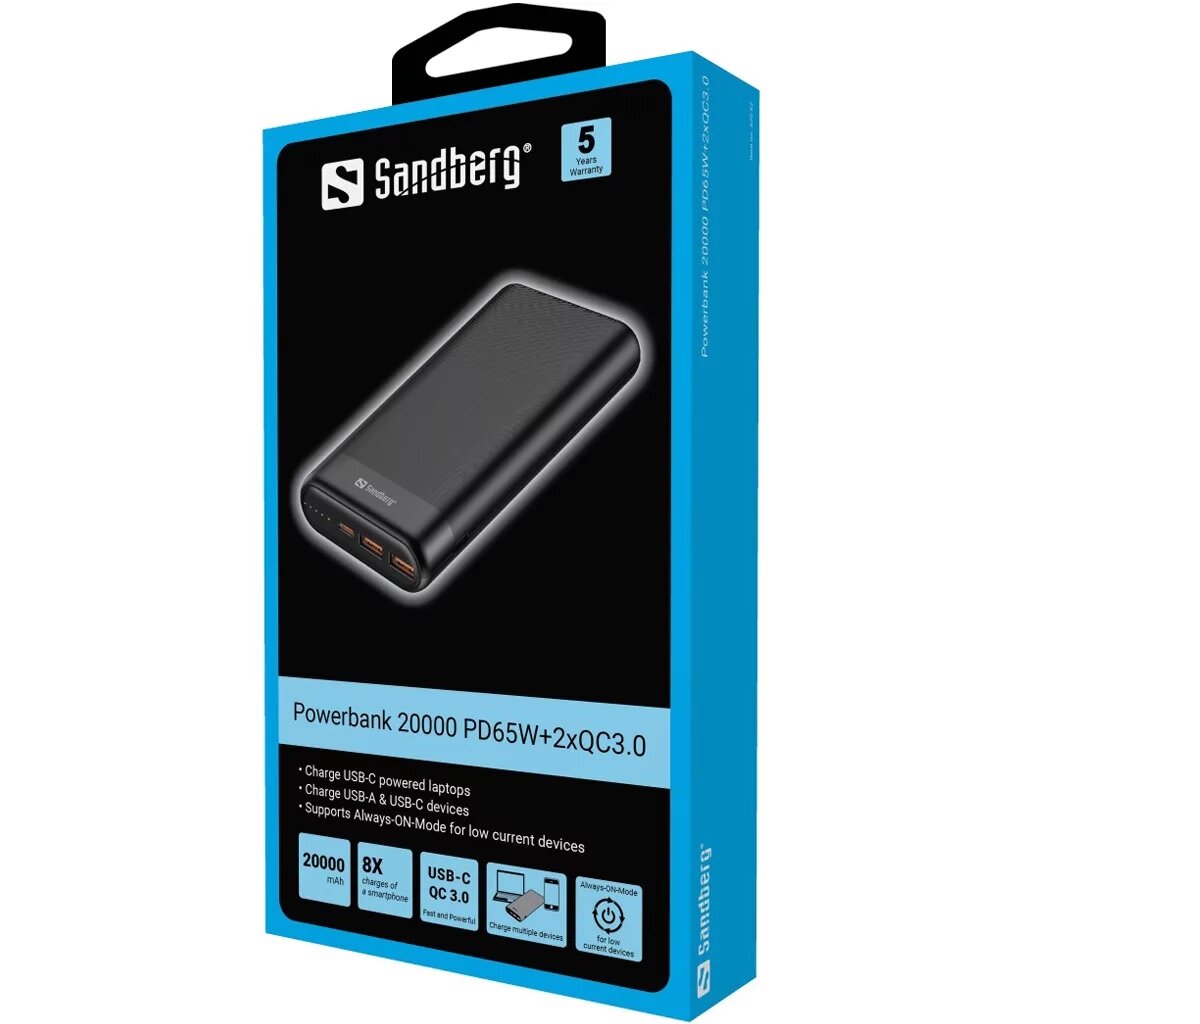 Powerbank Sandberg 20000 PD65W+2xQC3.0 czarny w niebieskim fabrycznym pudełku na białym tle